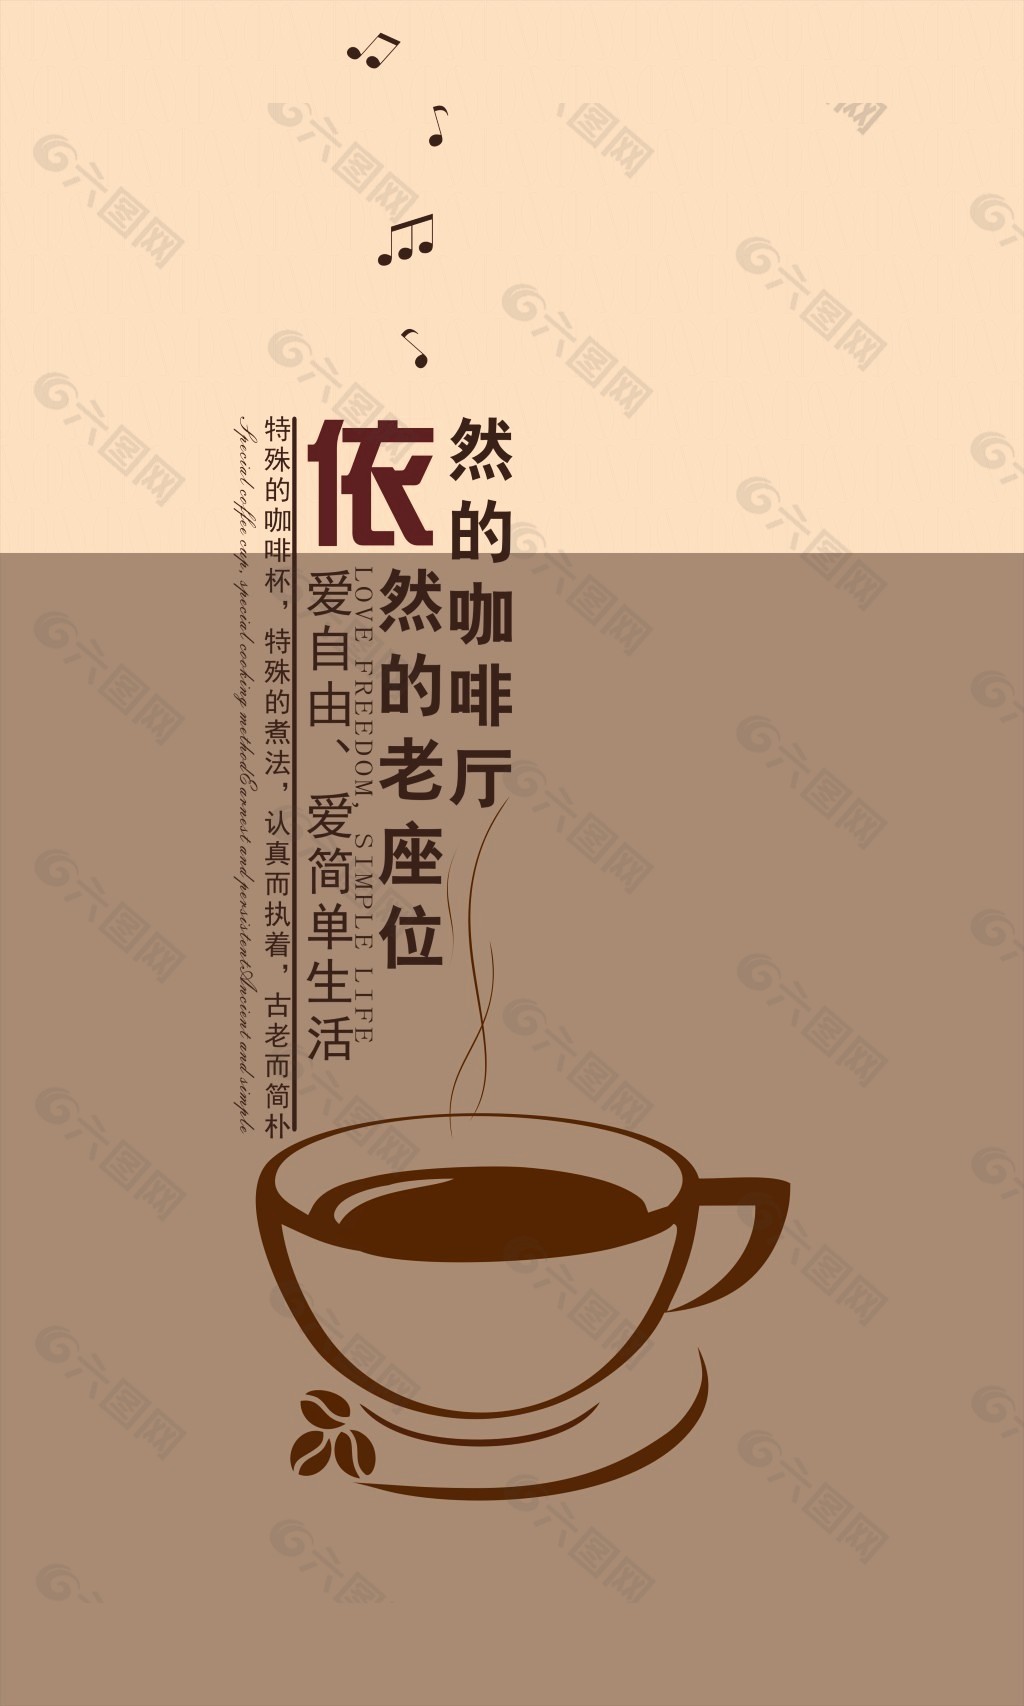 咖啡点平面广告素材免费下载(图片编号:6017642)